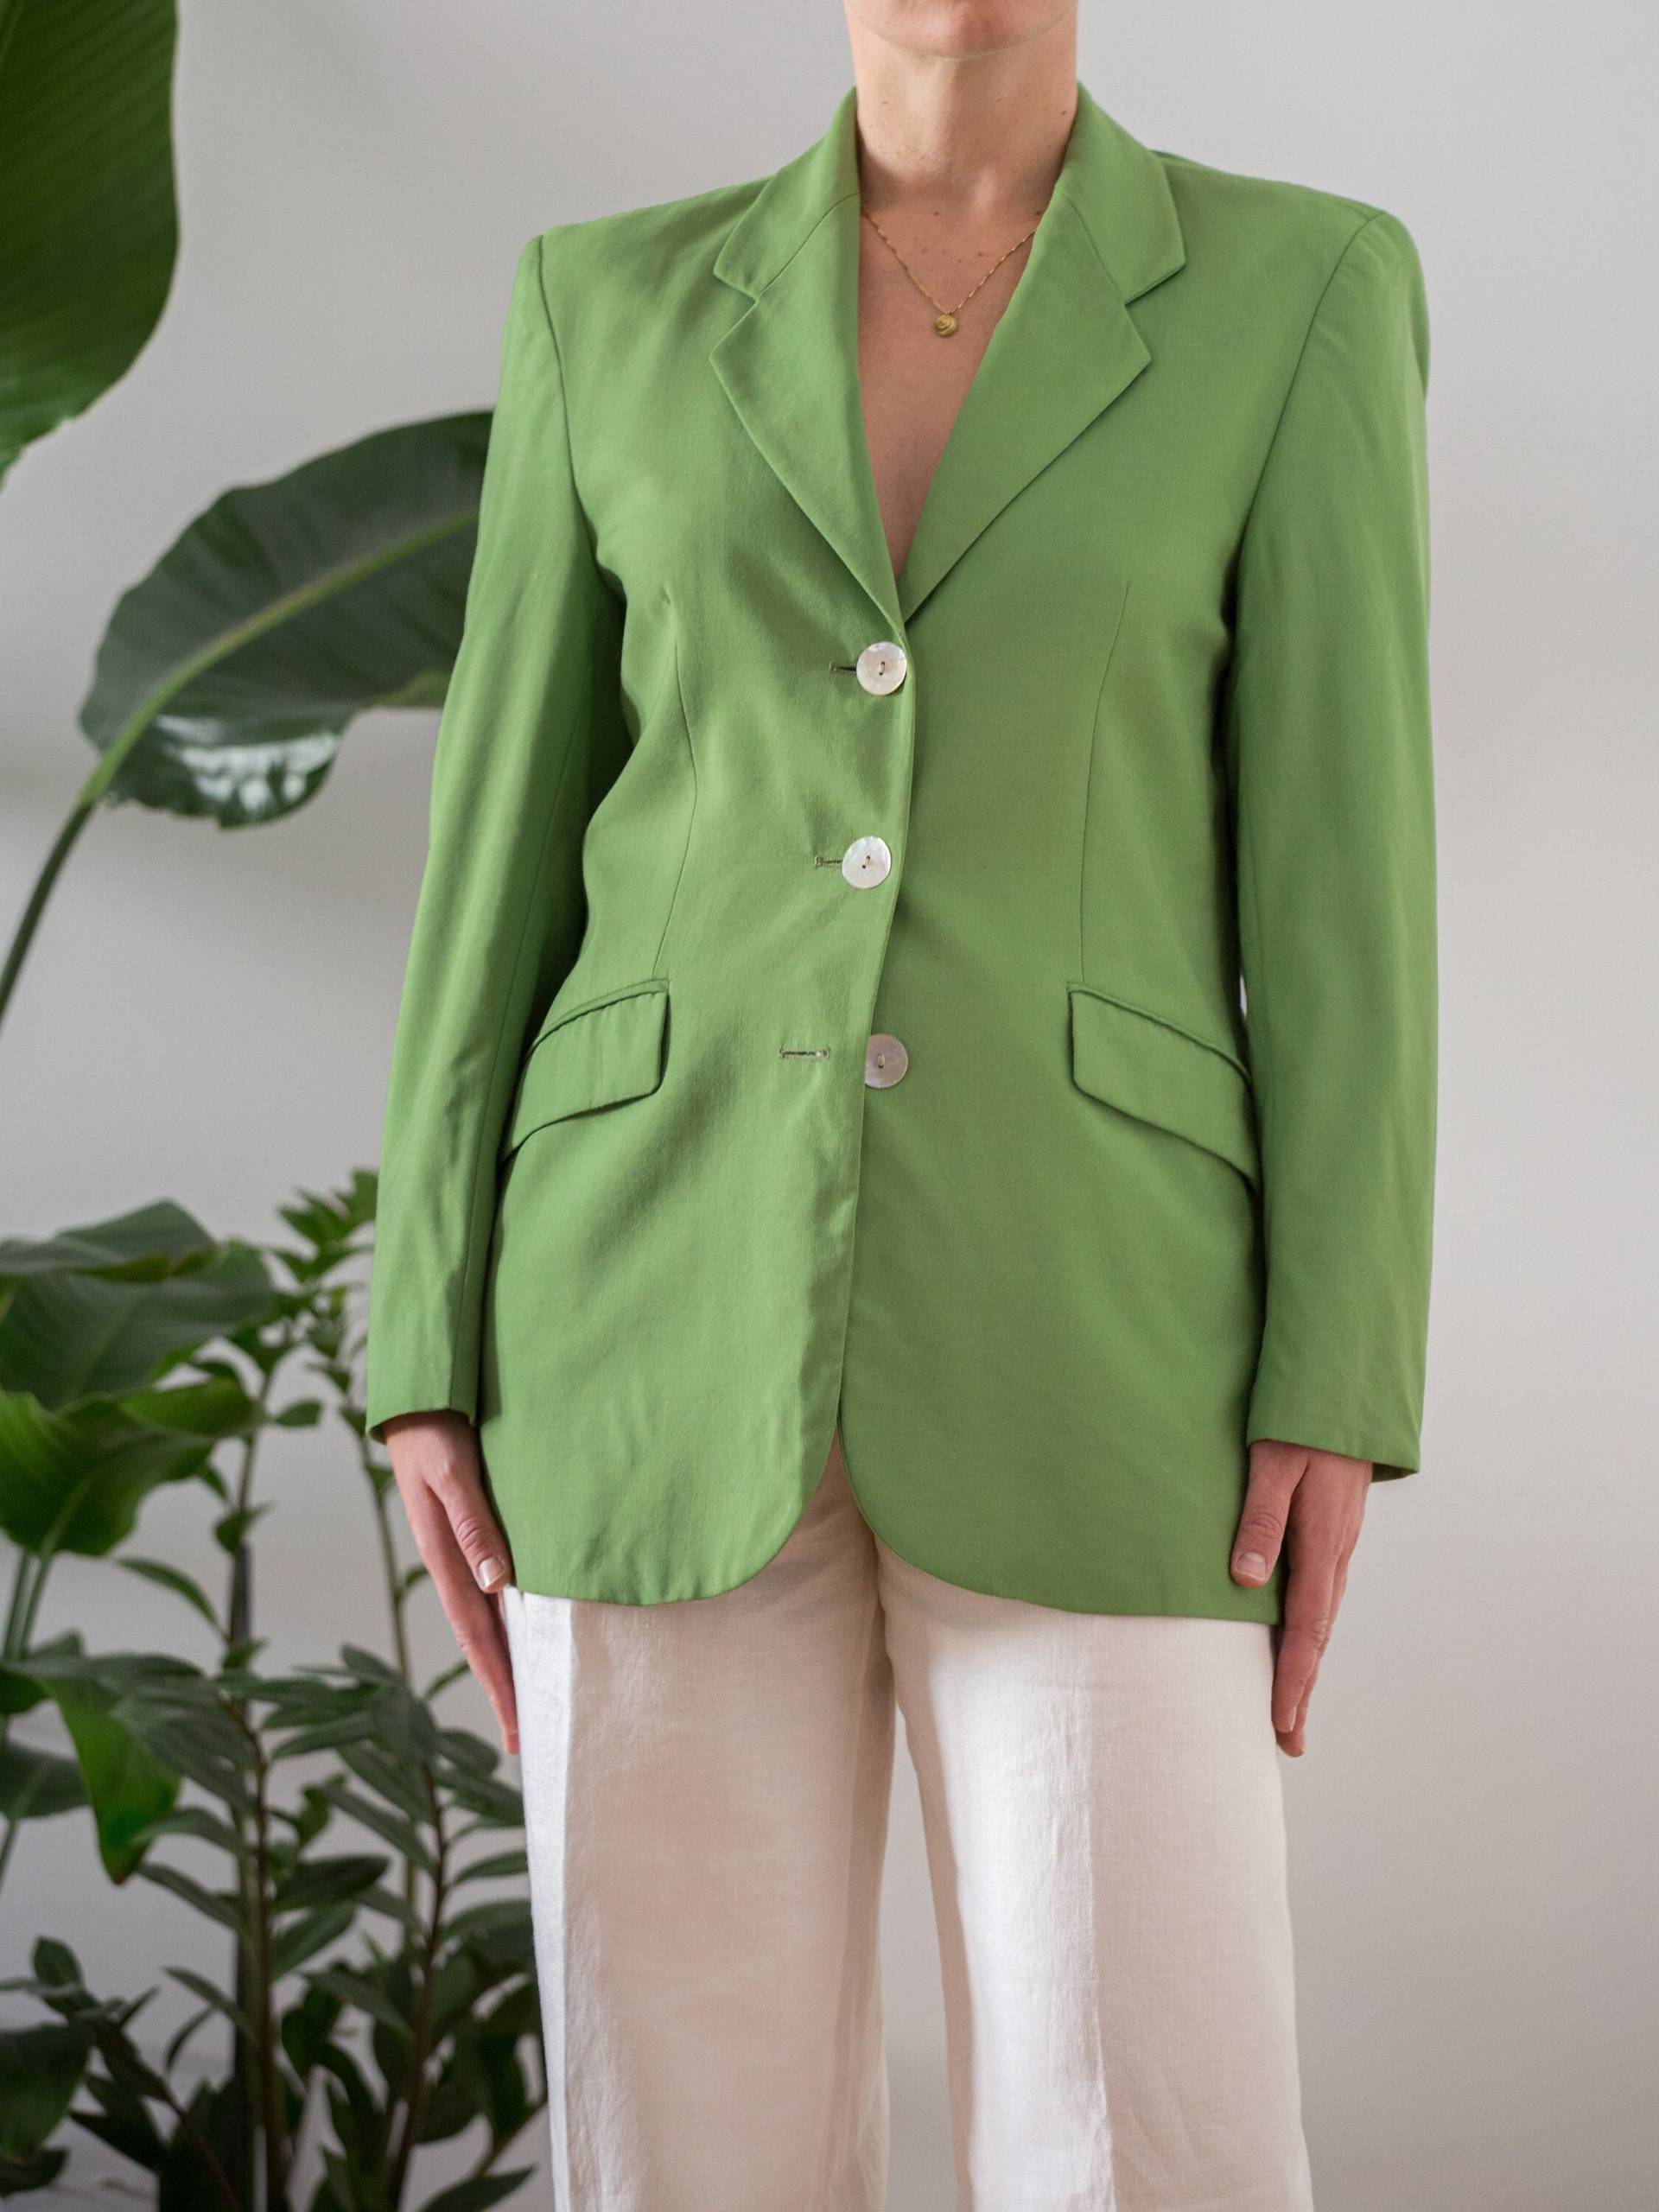 Vintage Reine Wolle Maßgeschneiderte Blazer Jacke in Lime Grün Für Frauen | Größe M/D38 Ausgestattet Einreihiger Mit Kerben-Kragen Zipfl-Kragen Go194 von NorasVintageSilkShop